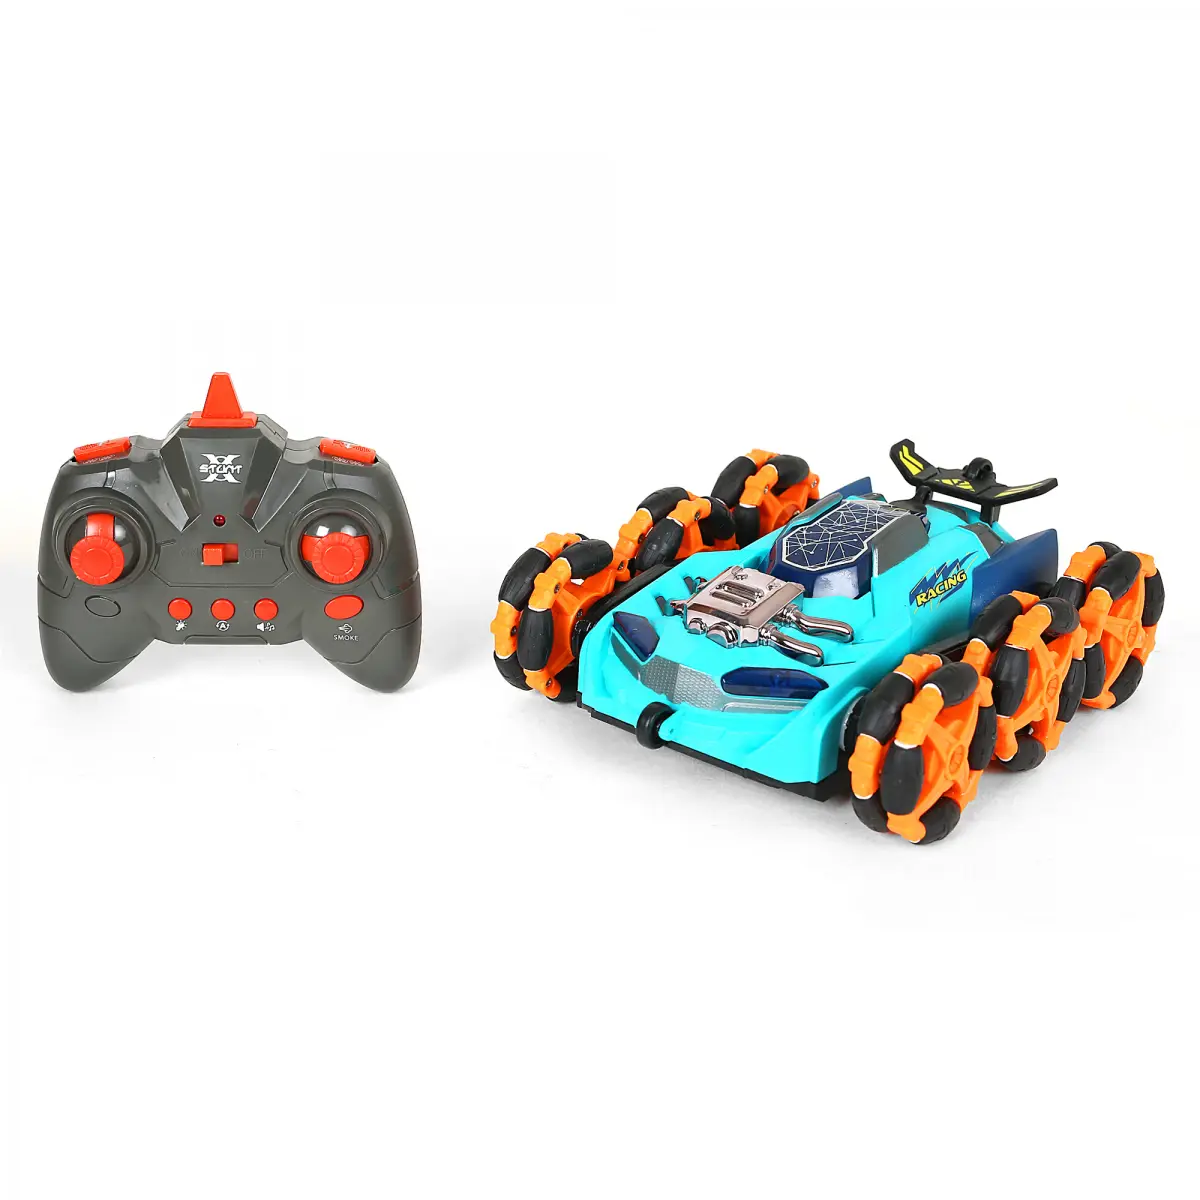 Ralleyz Spider Racing Remote Control Car, Multicolour, 6Y+